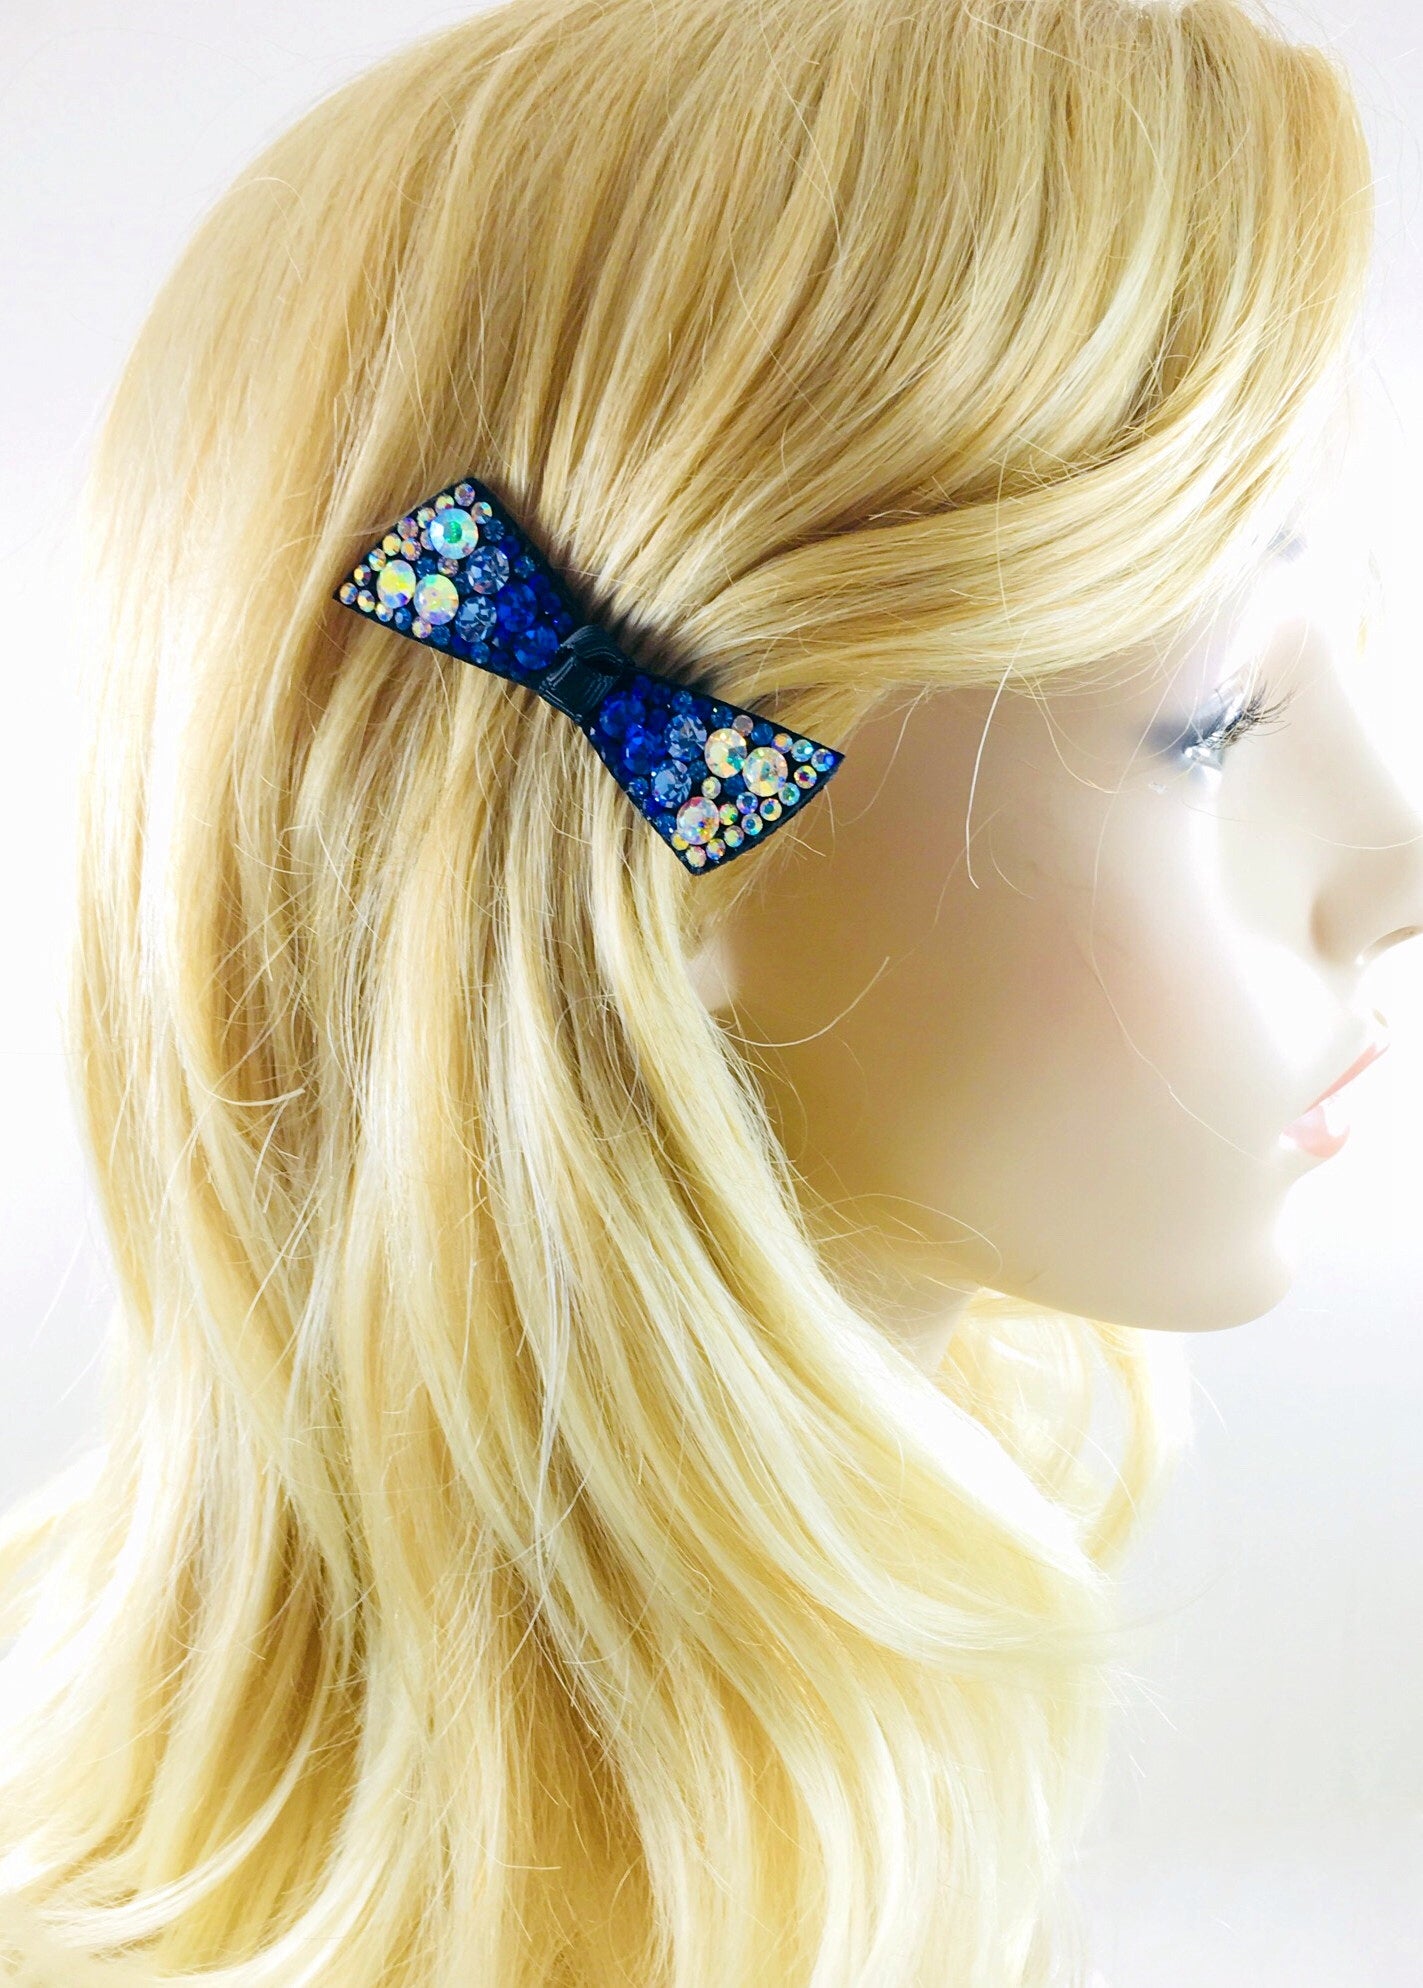 Urban Bow Knot Hair Clip Swarovski Crystal Clamp Acrylic black base Royal Blue AB, Hair Clip - MOGHANT